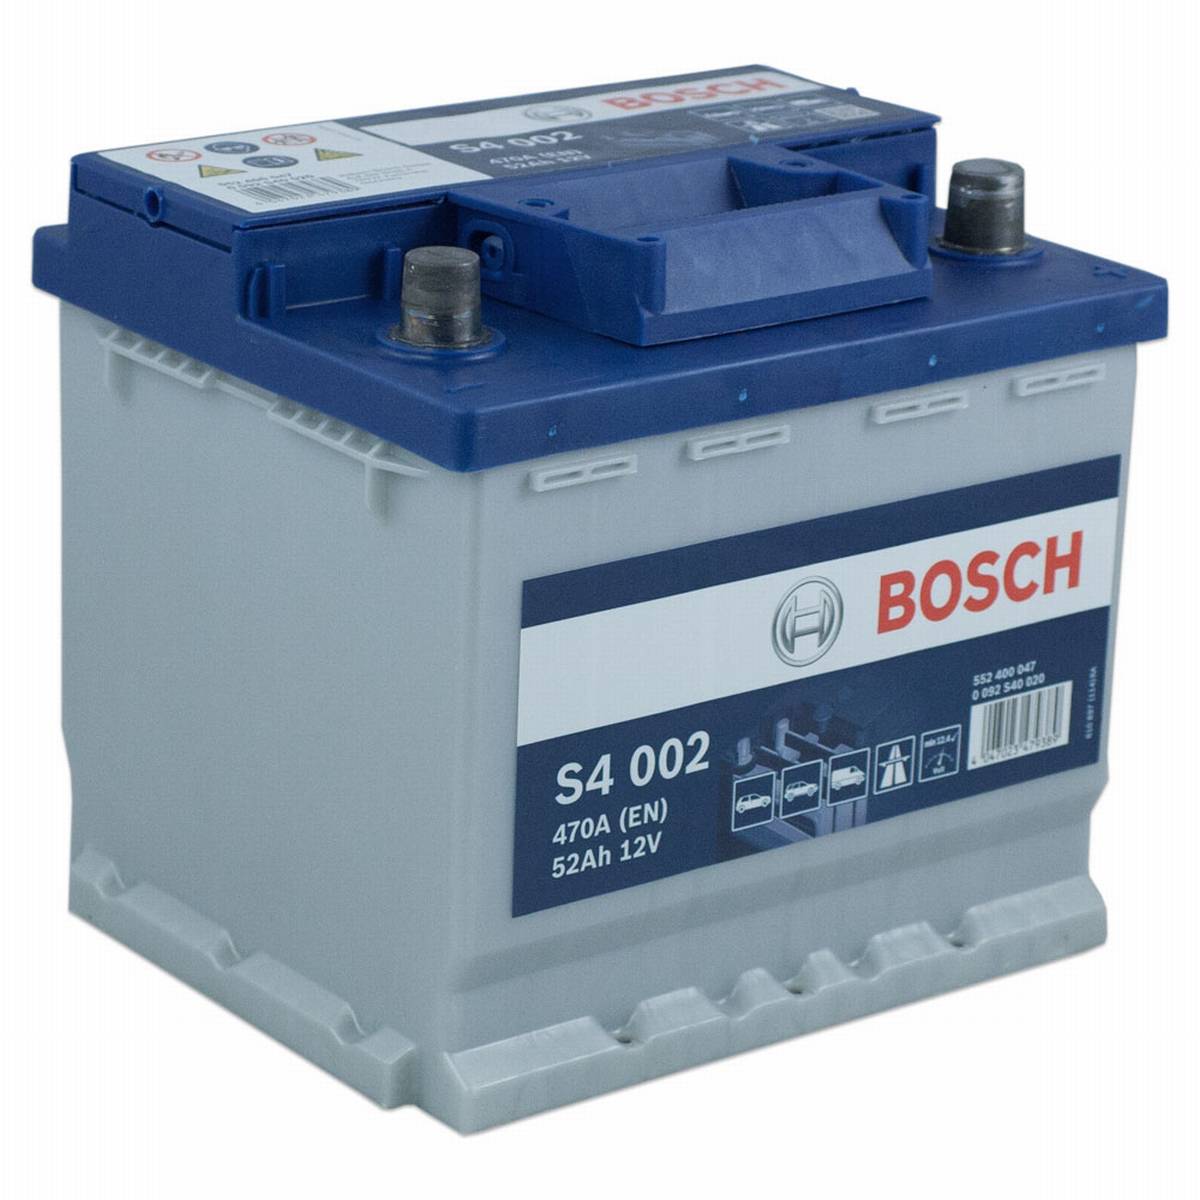 Batteria auto Bosch S4 002 12V 52Ah 470A